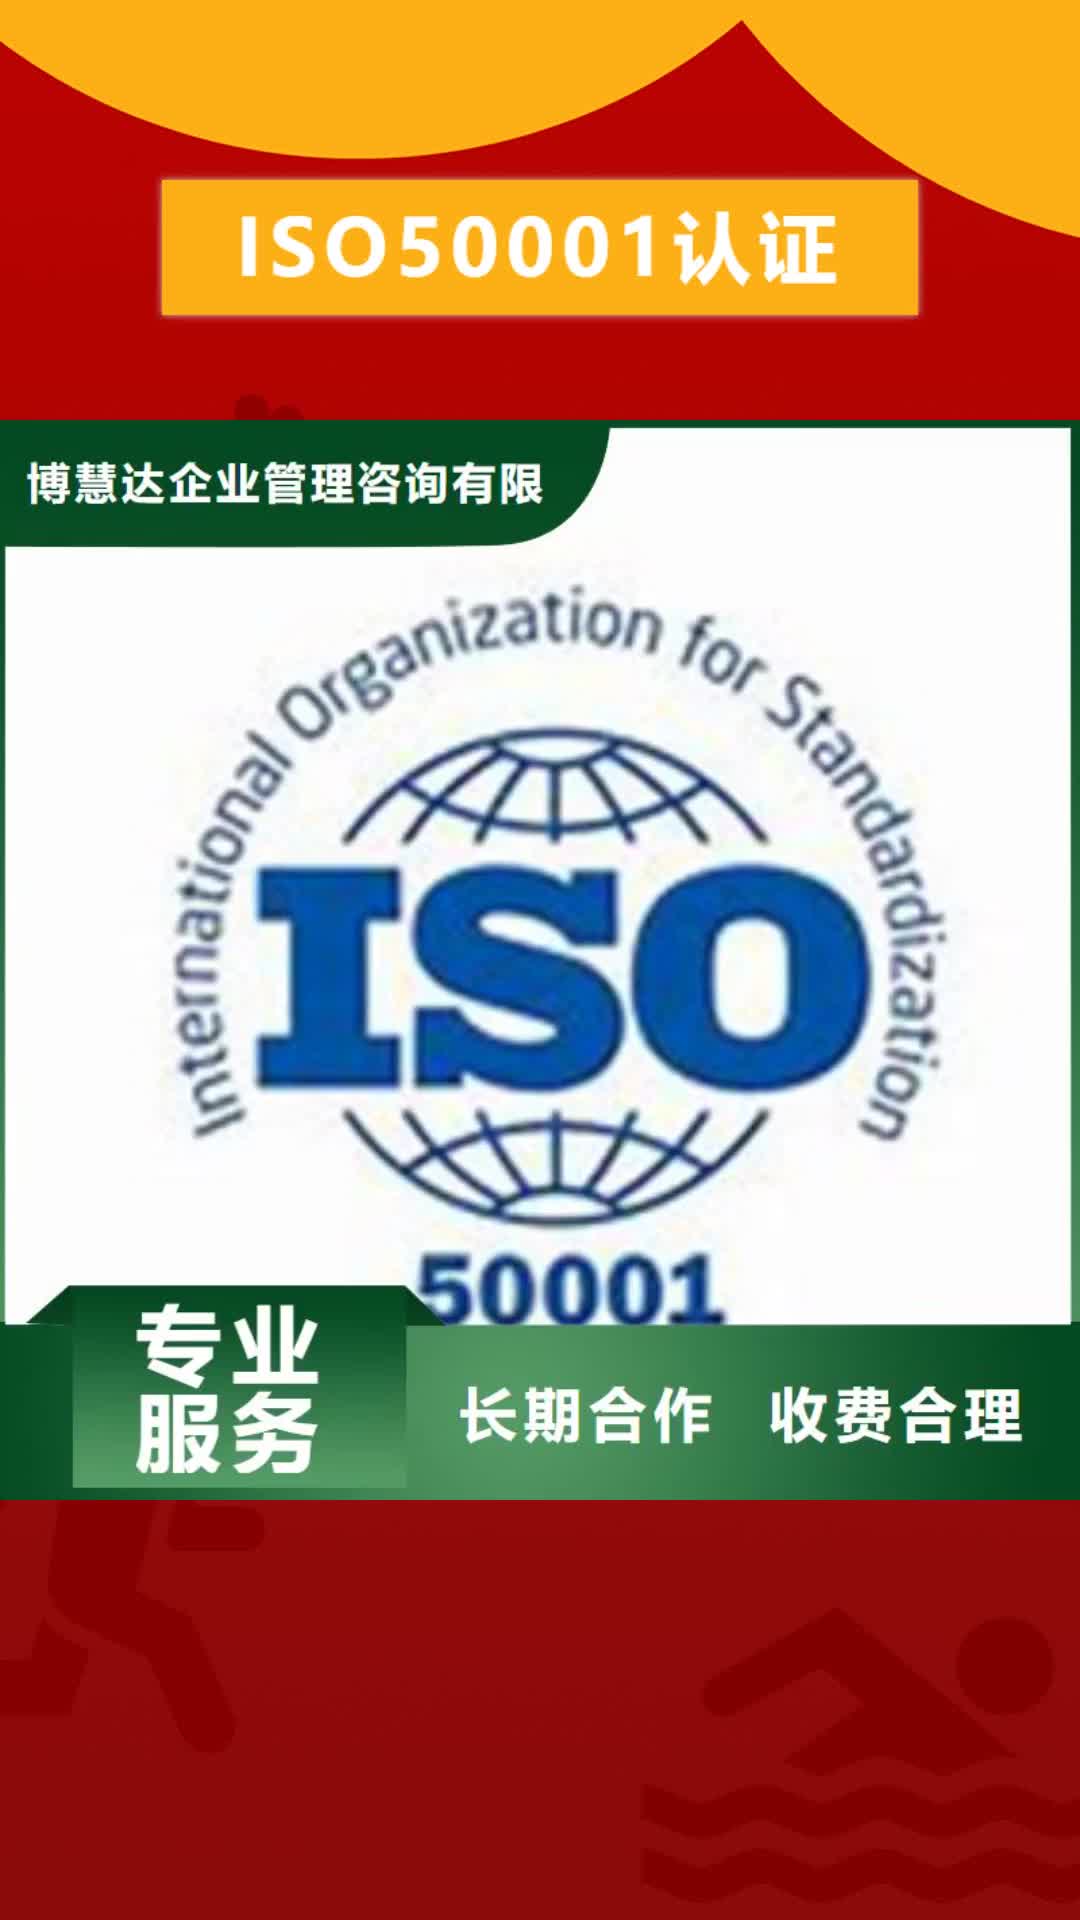 海西 ISO50001认证【ISO14000\ESD防静电认证】好评度高